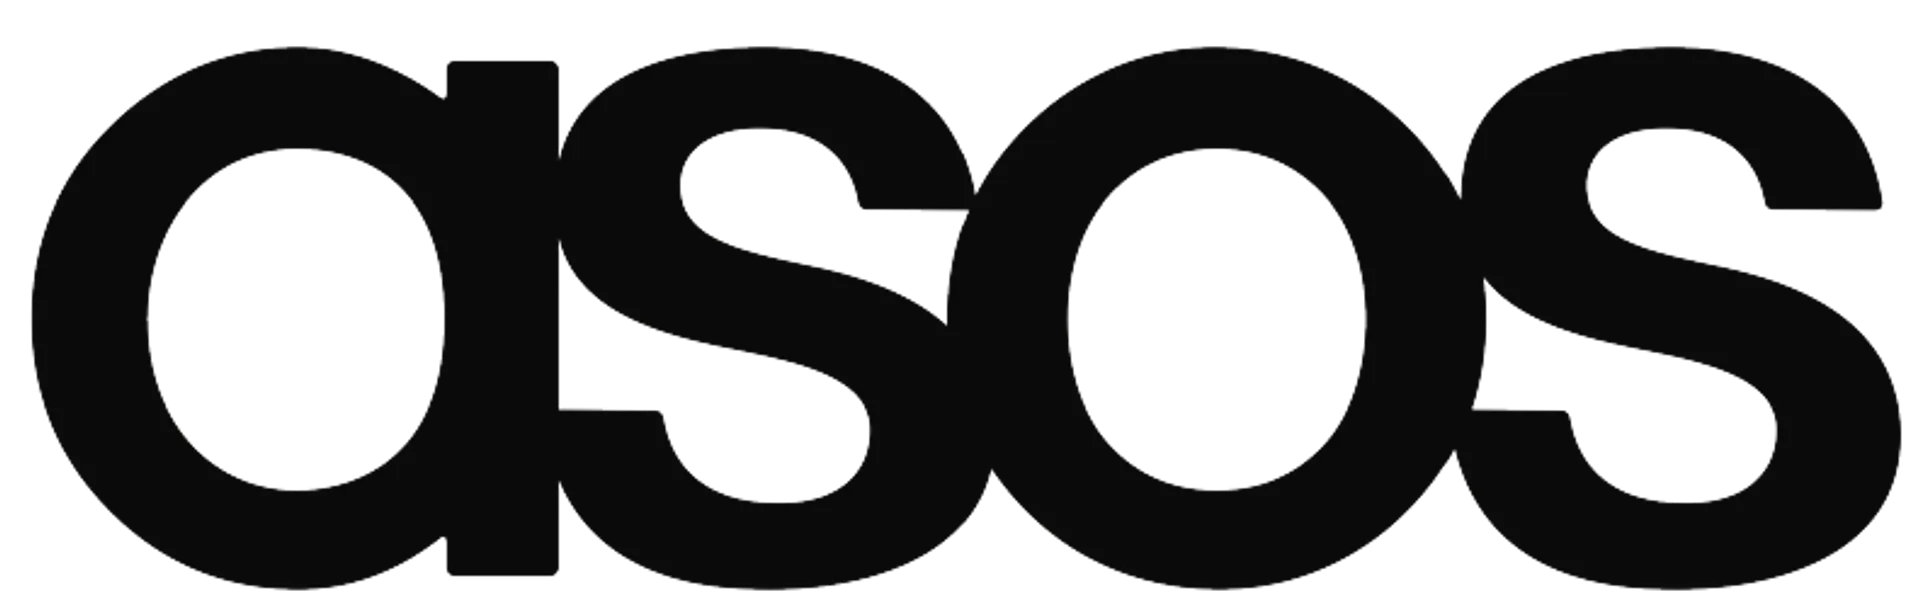 ASOS logo die aktuell Flugblatt